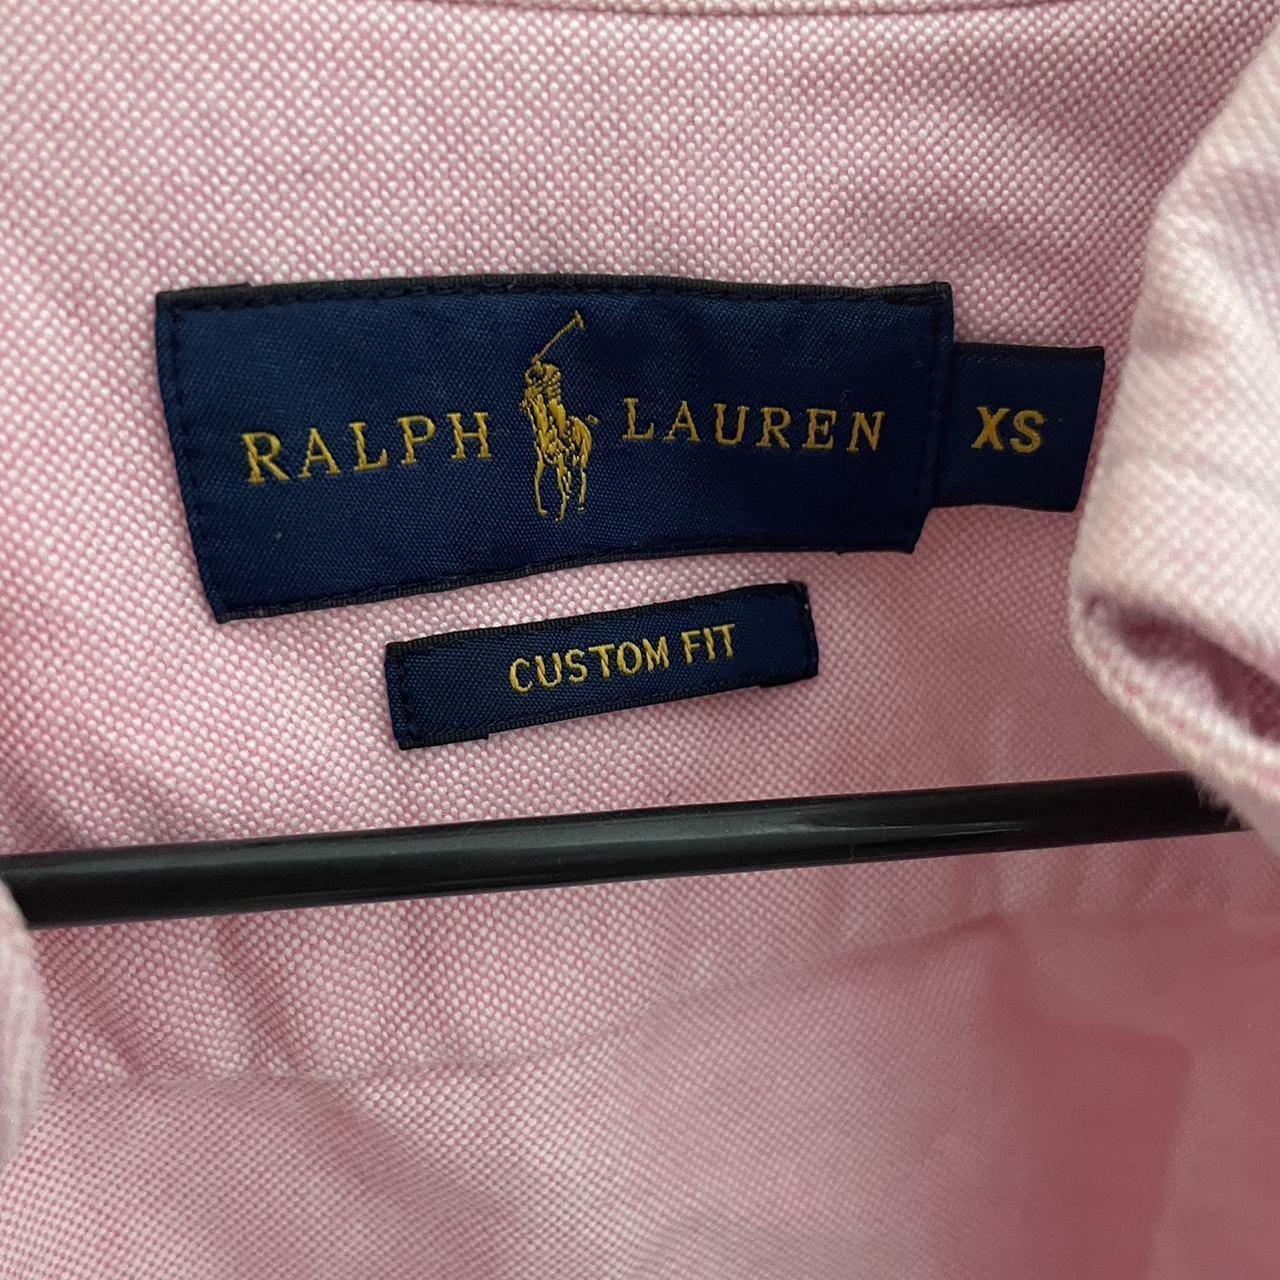 Ralph Lauren Shirt | Size XS Only worn a few times,... - Depop